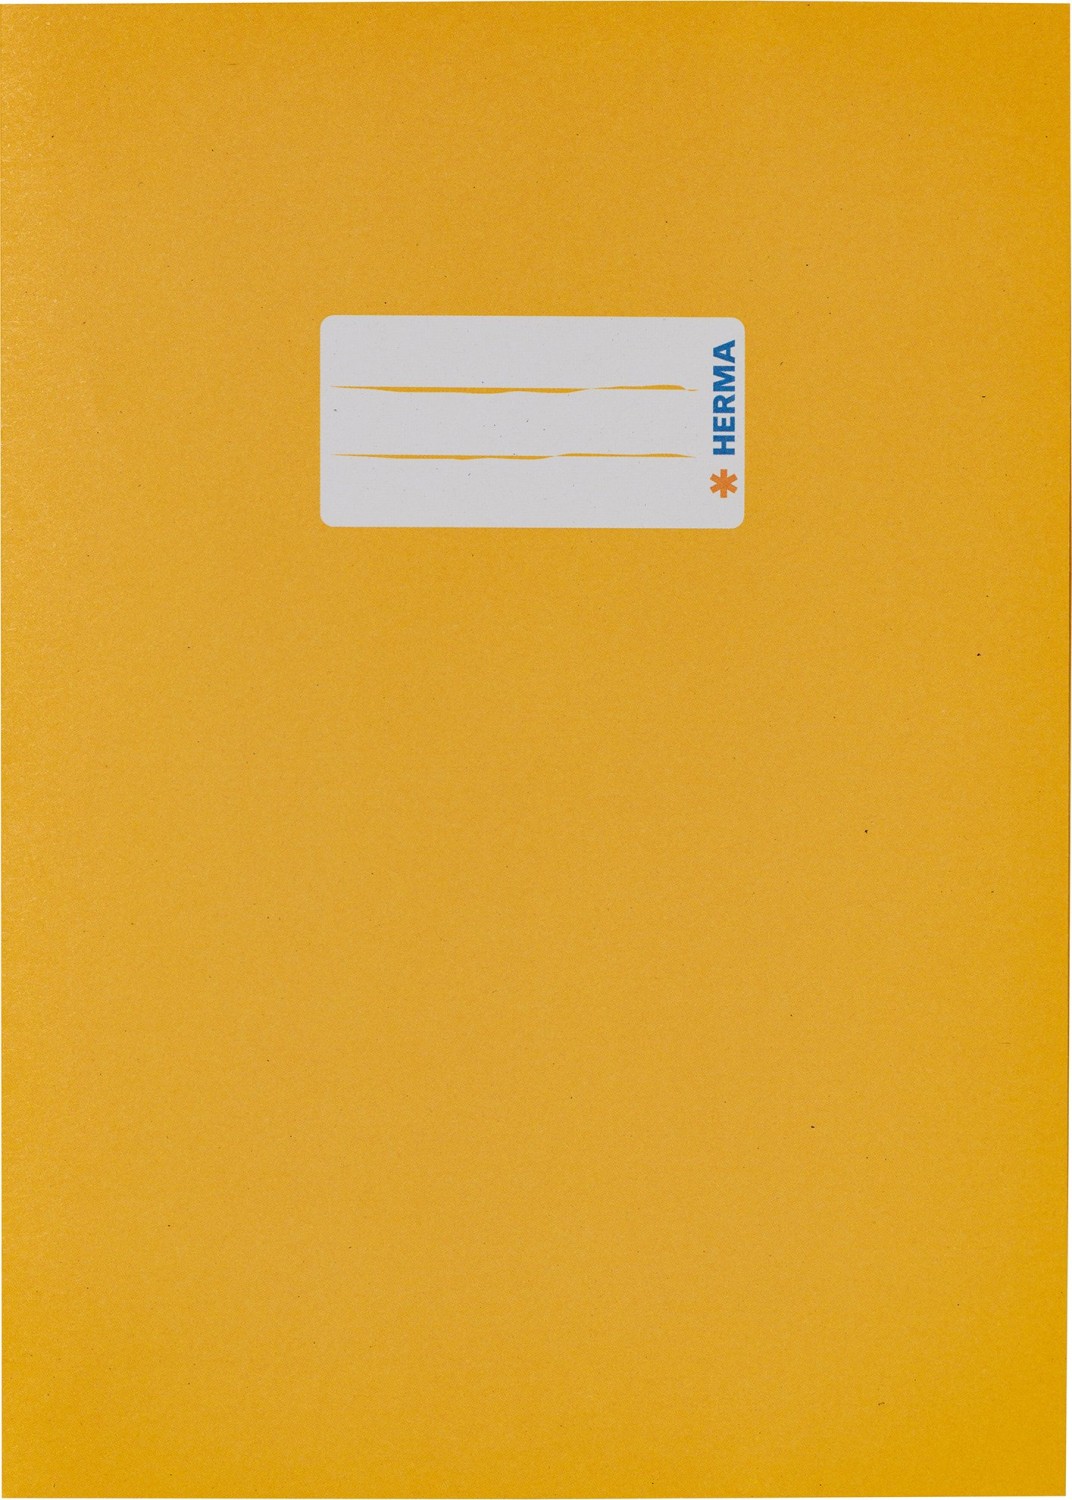 HERMA Heftschoner Recycling, DIN A5, aus Papier, gelb mit Beschriftungsetikett, 100 % Altpapier - 10 Stück (5511)